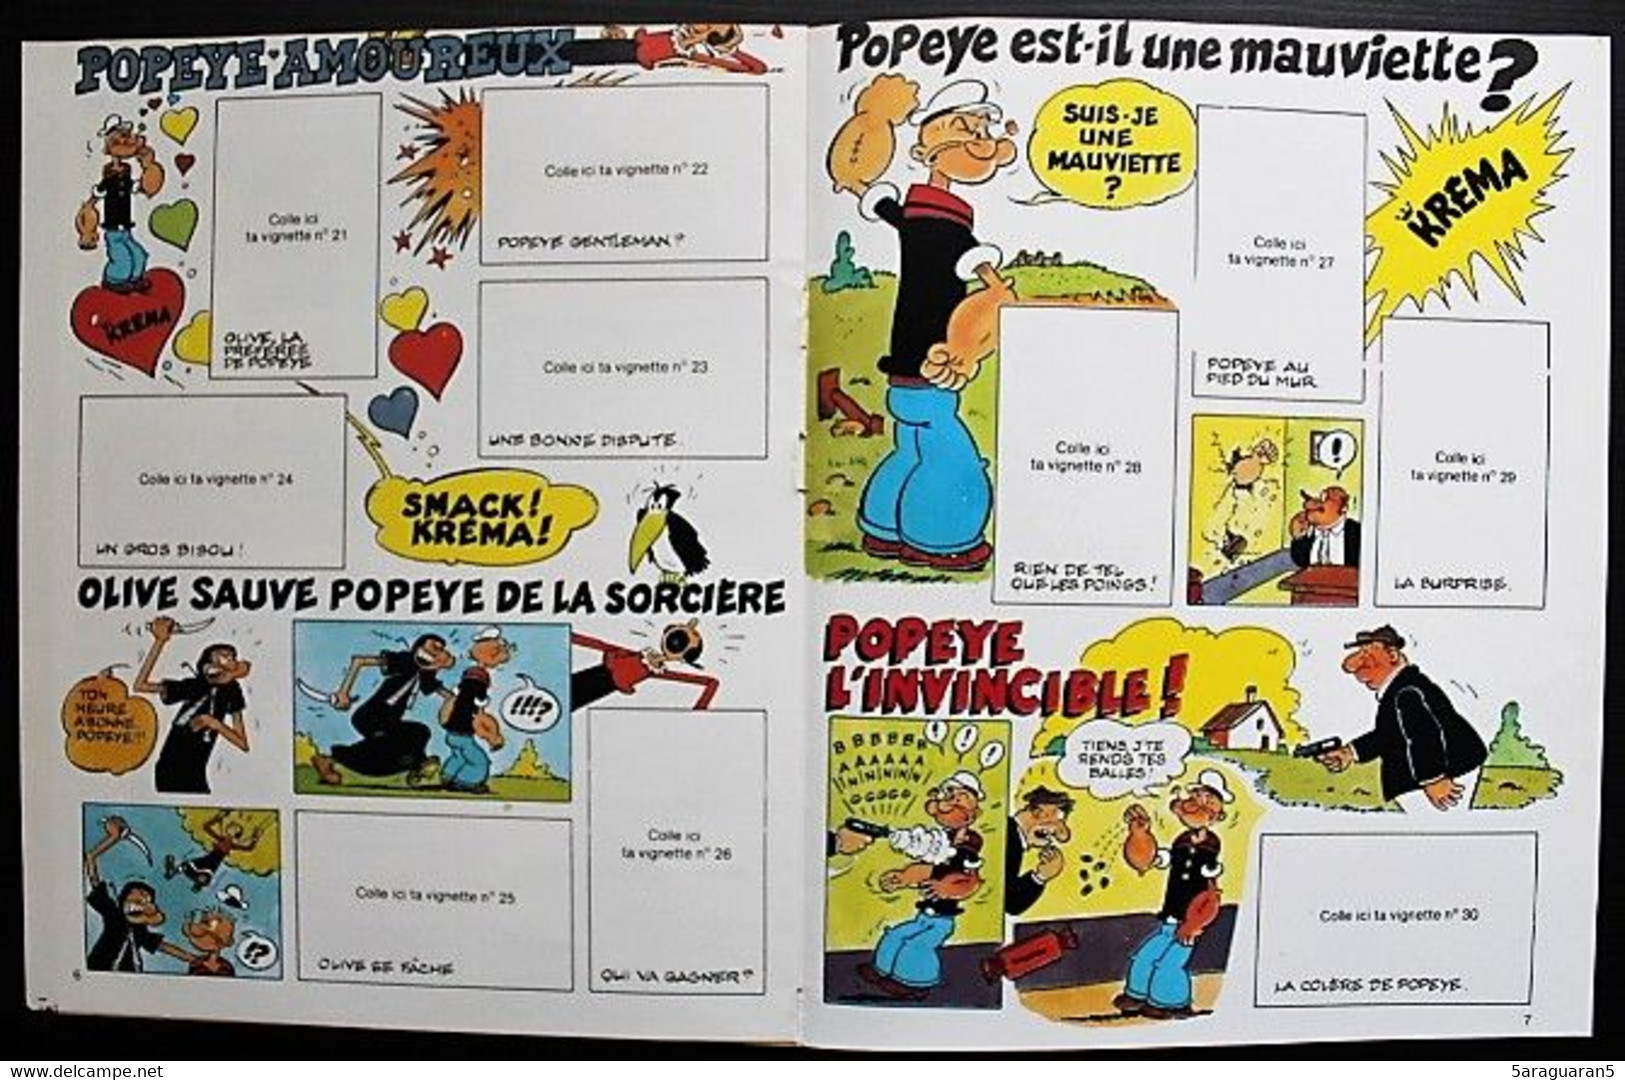 Album Publicitaire Collecteur De Vignettes Autocollantes Popeye - Bonbons Kréma 1981 - Stickers